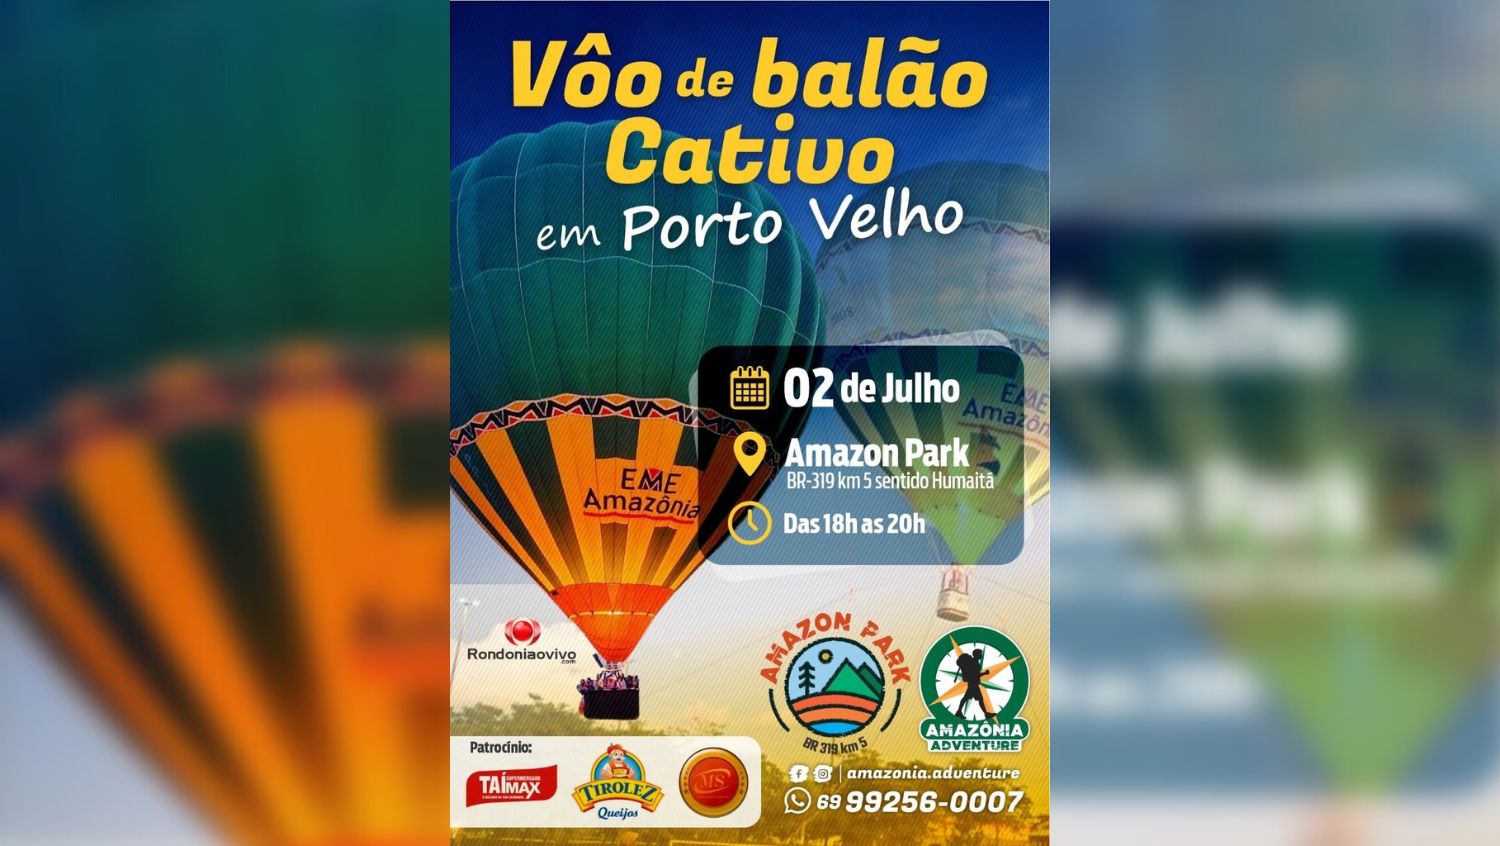 EMOÇÃO: Amazônia Adventure promove passeio de balão em Porto Velho